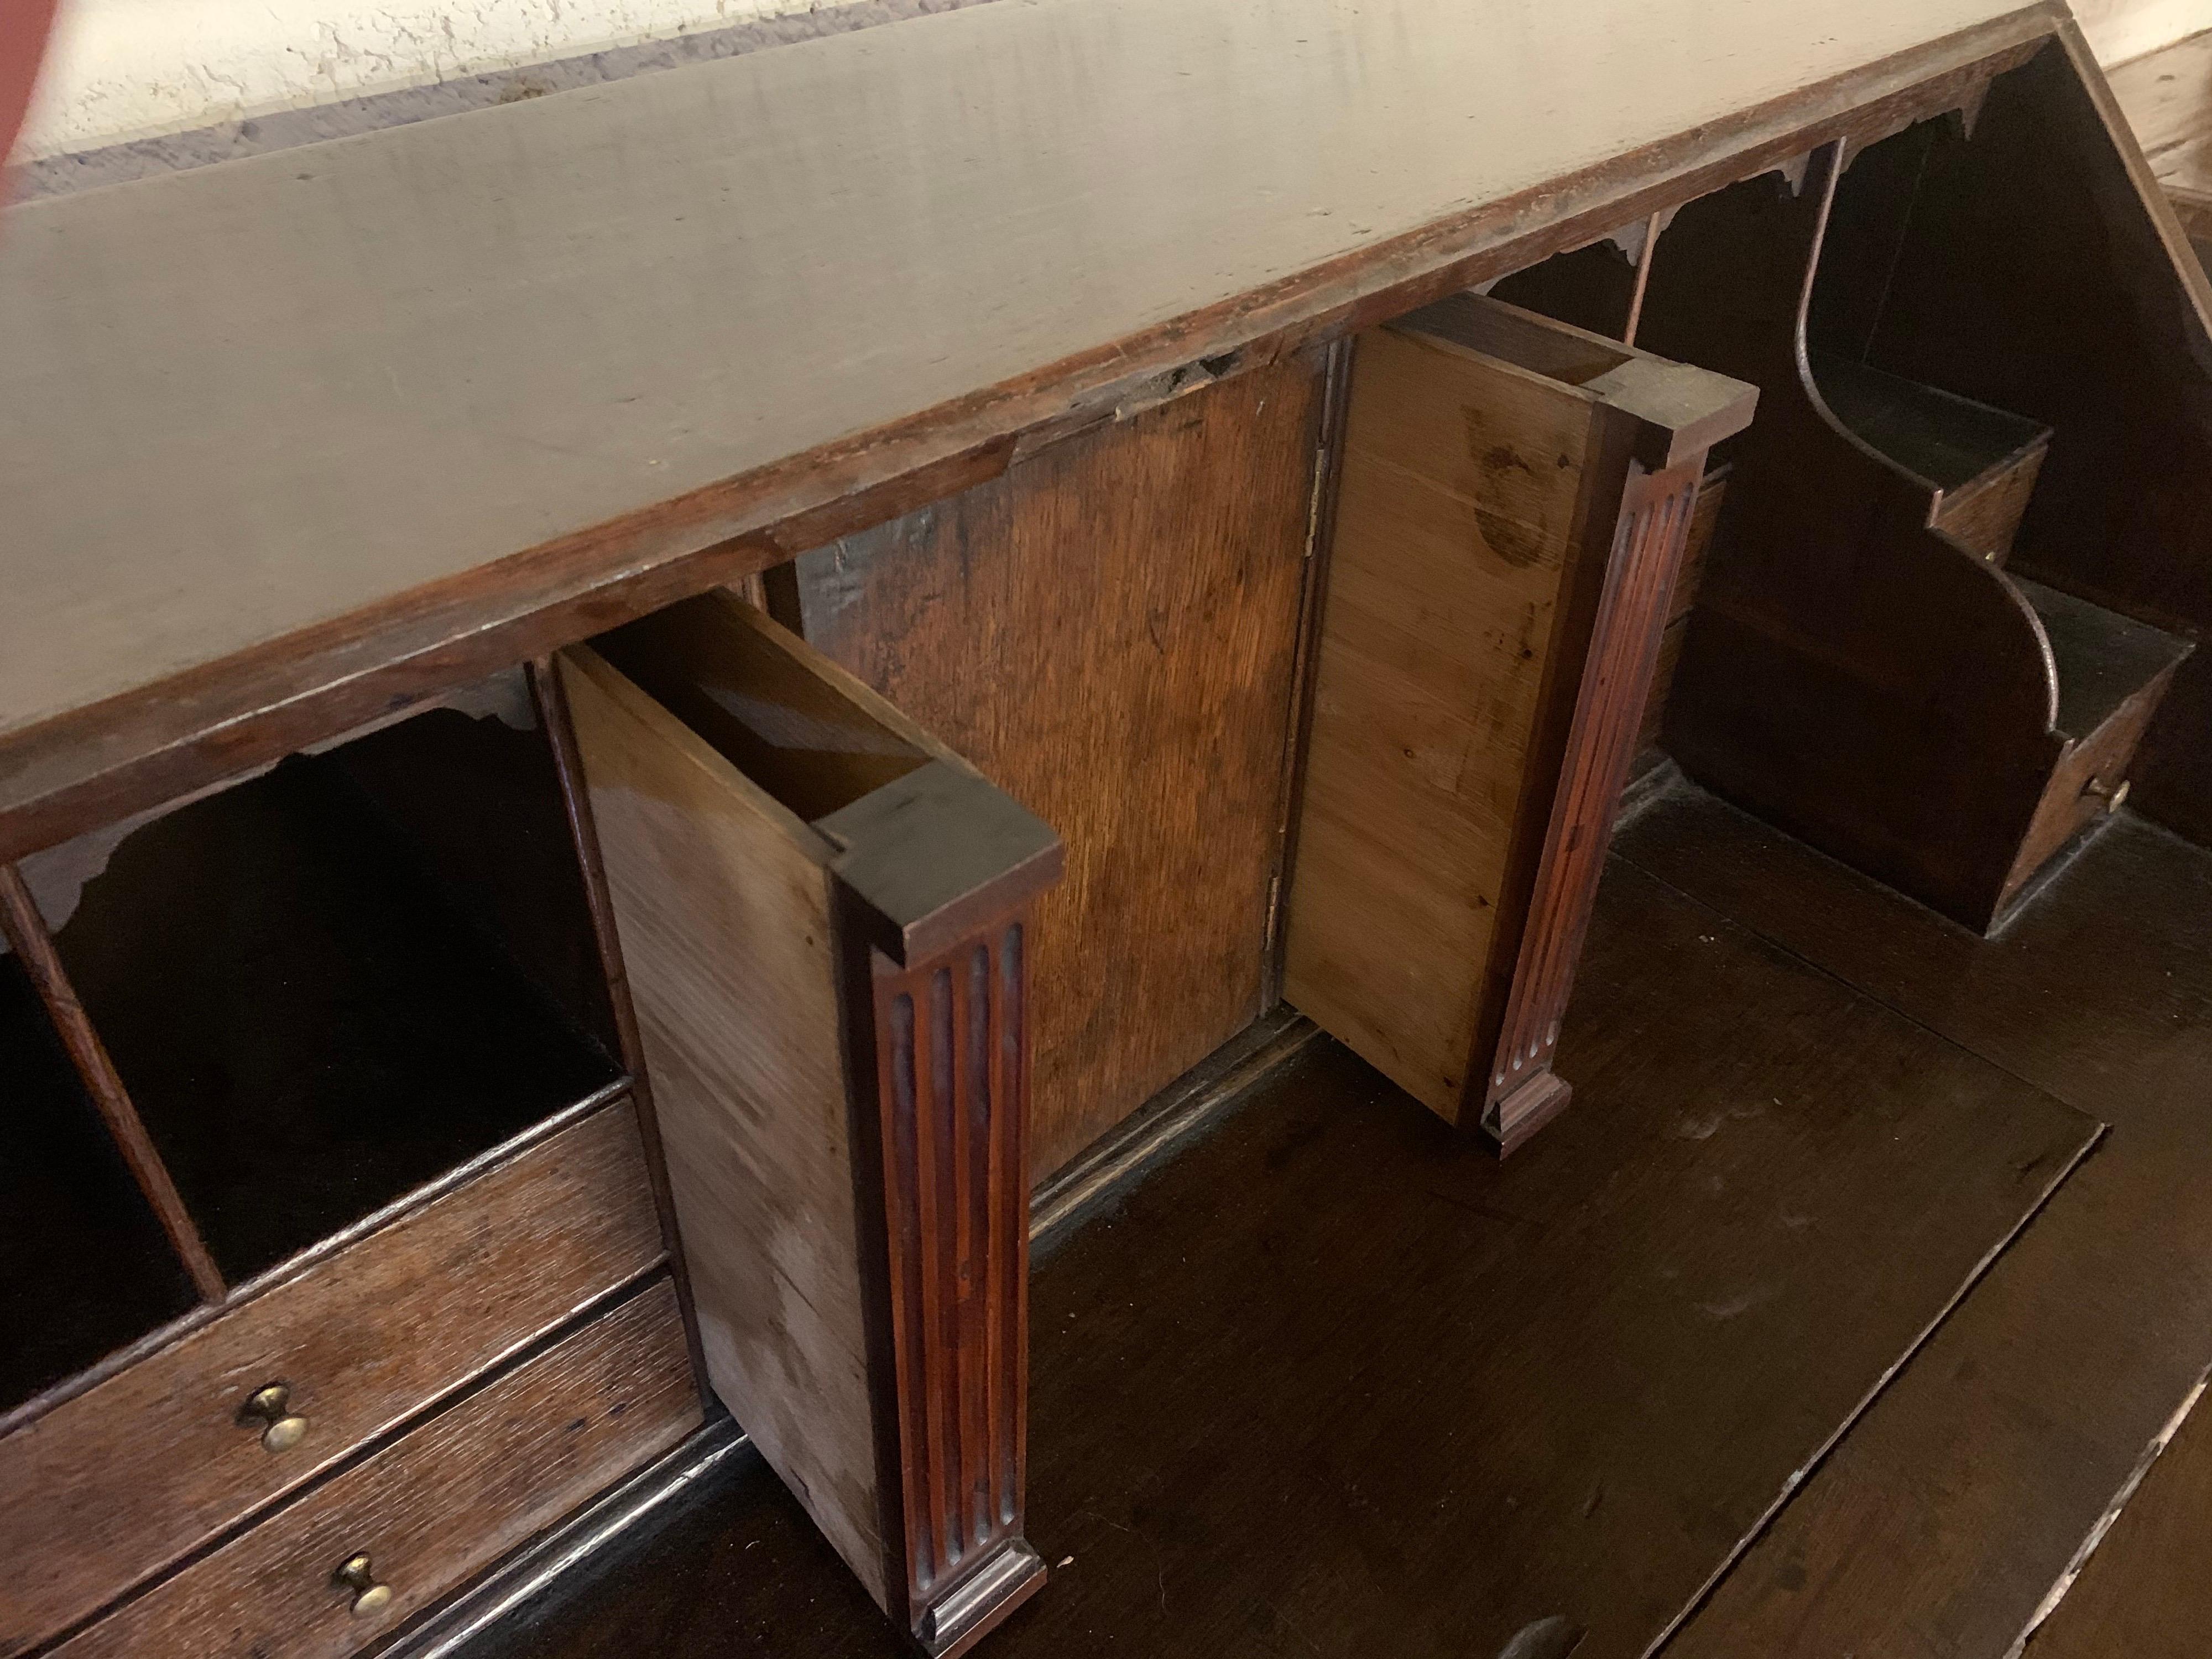 18. Jahrhundert georgianischen Eiche Bureau hat das Bureau vier Schubladen mit Schwanenhals Griffe. Die Kommode hat einen Sturz Frontklappe gute Schreibfläche. Der Innenraum verfügt über acht Schubladen und eine zentrale Tür mit zwei Geheimfächern